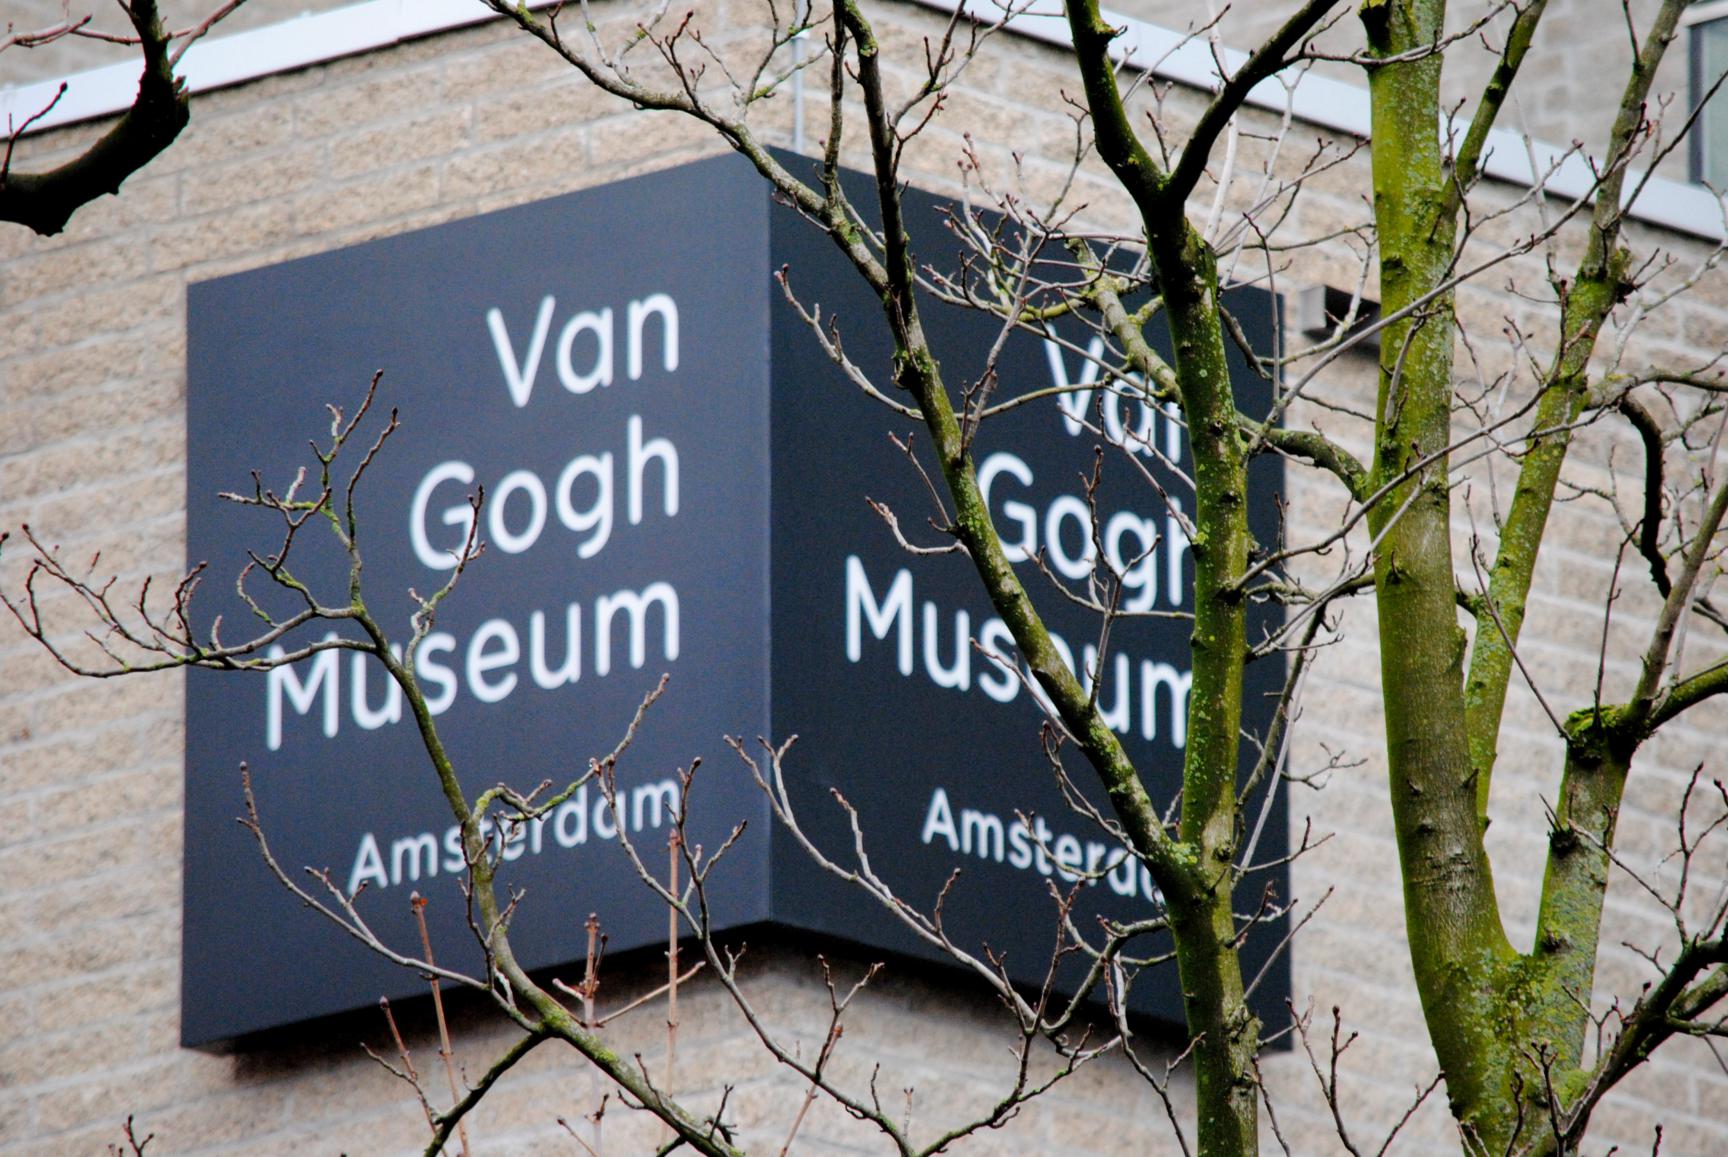 que-ver-amsterdam-museo-van-gogh